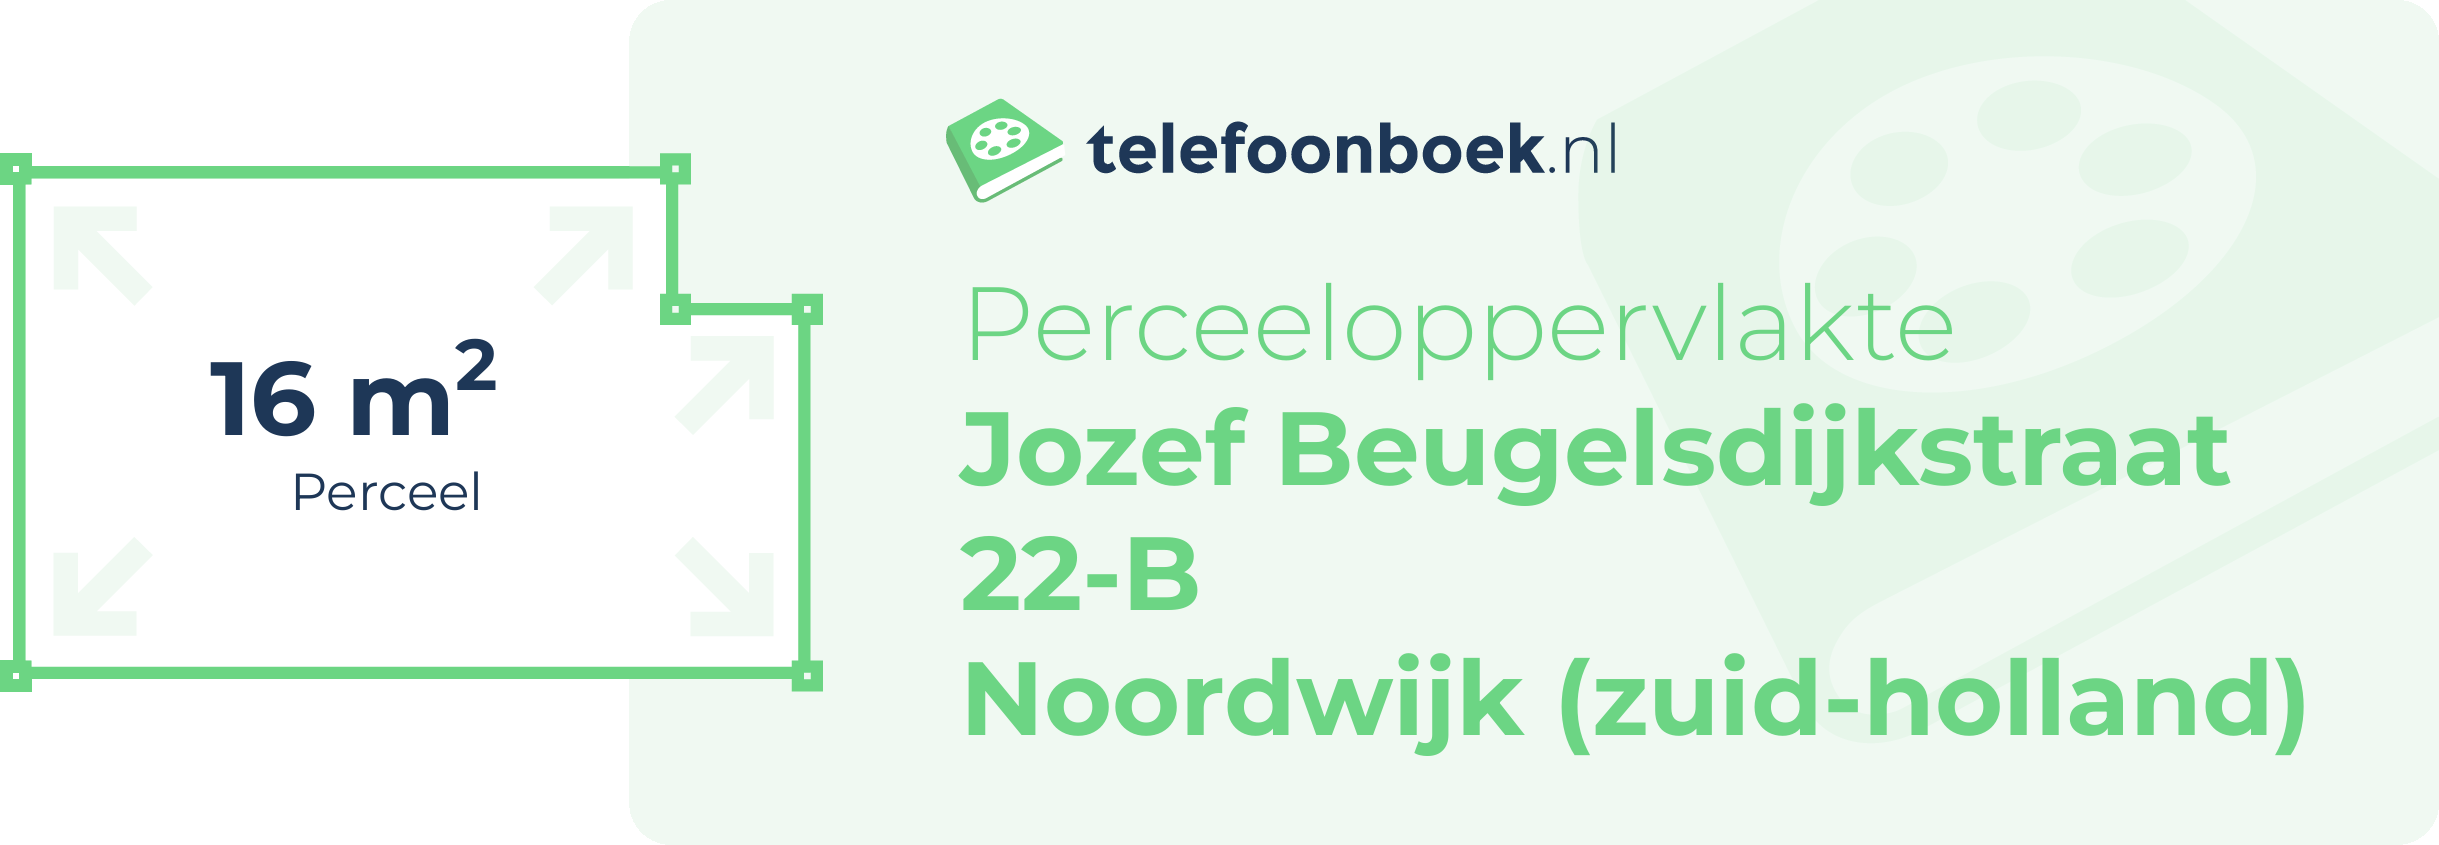 Perceeloppervlakte Jozef Beugelsdijkstraat 22-B Noordwijk (Zuid-Holland)